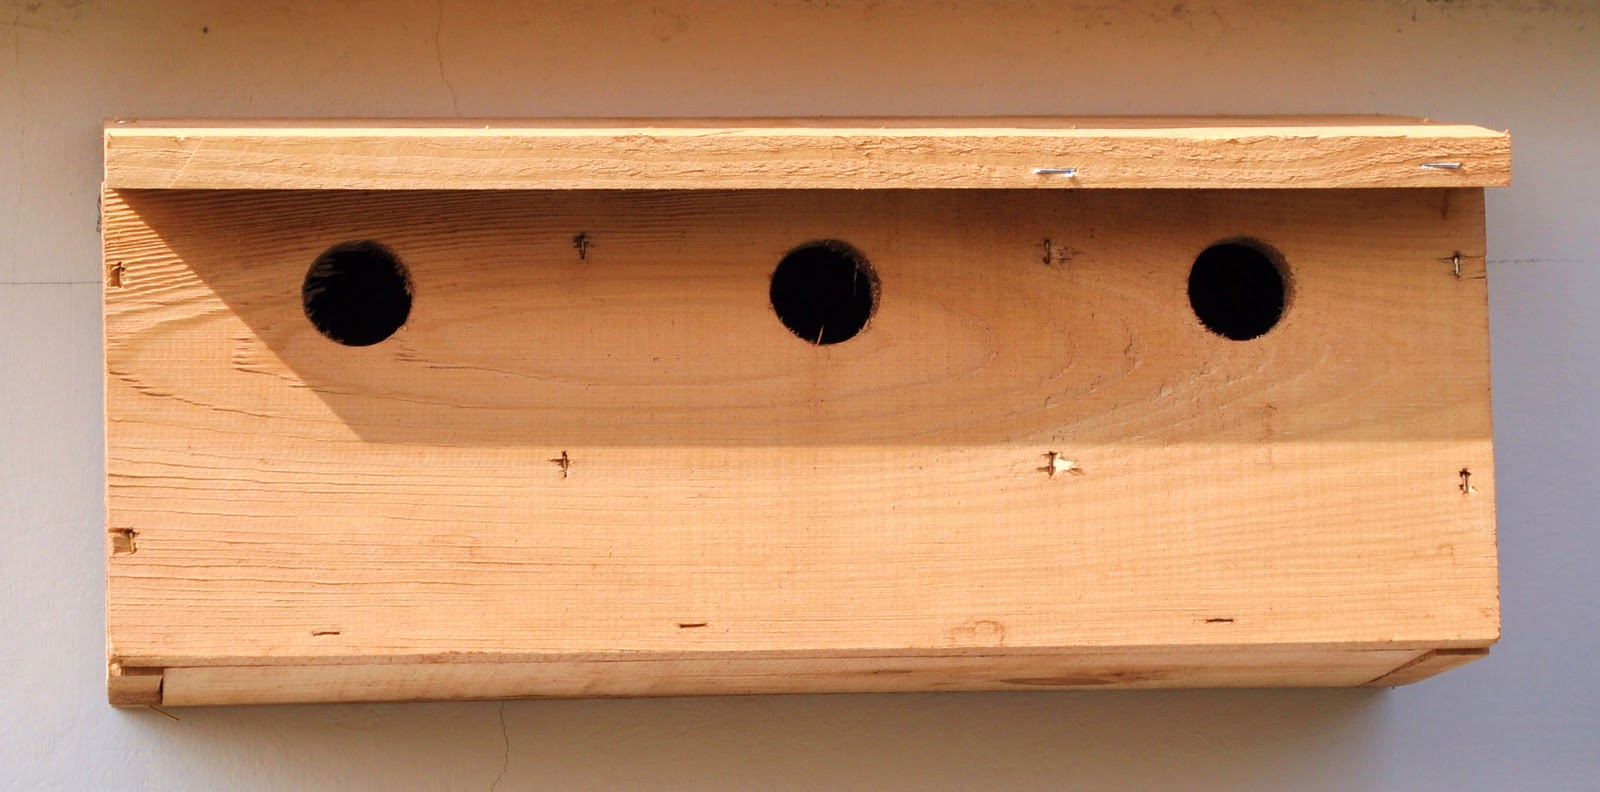 House Sparrow Bird Box Plans